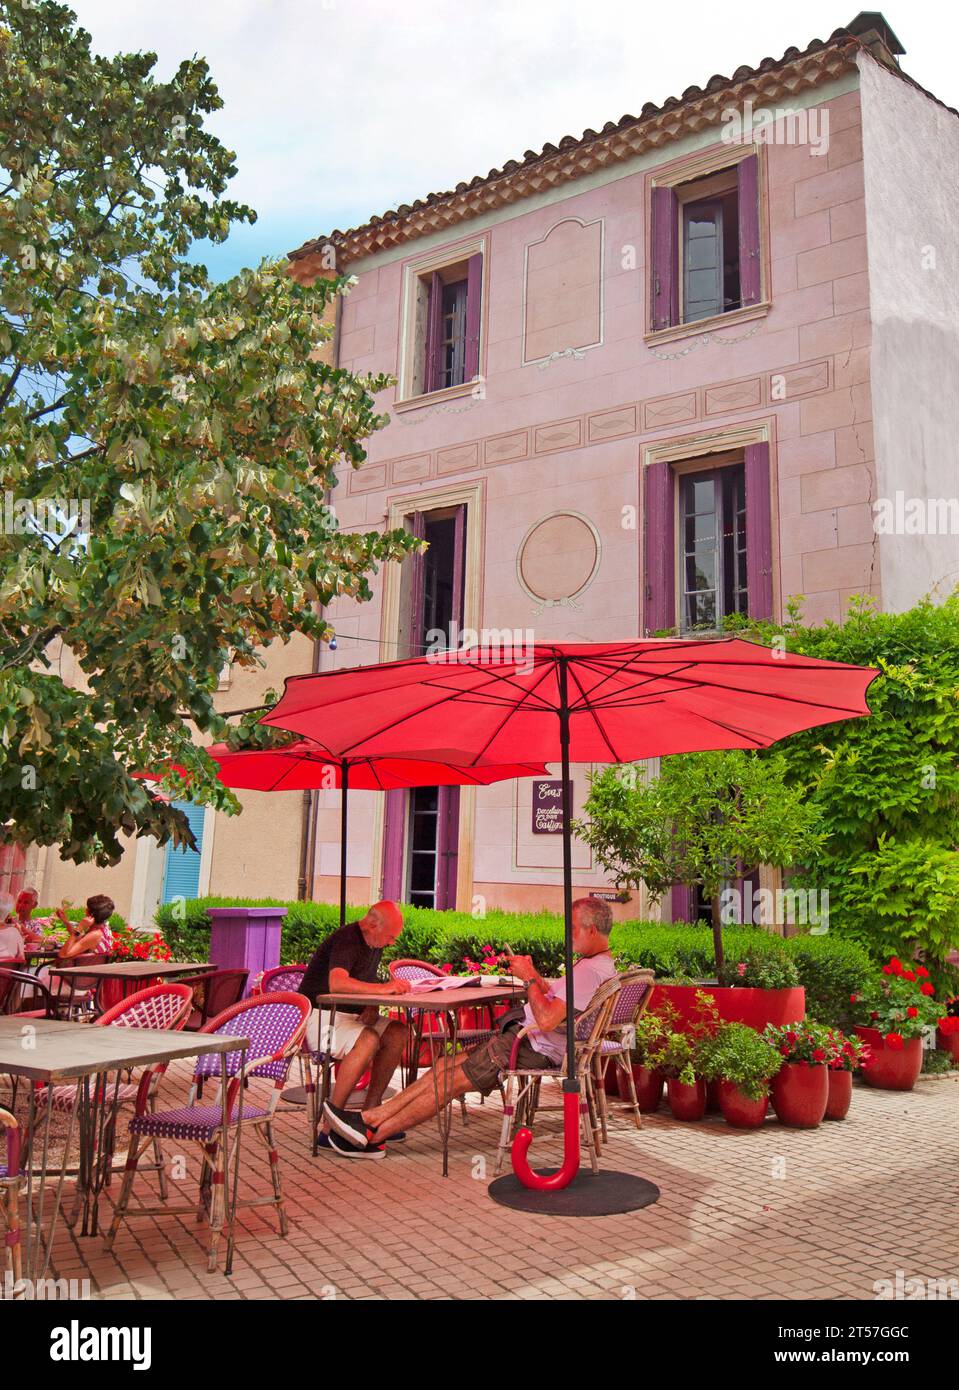 Le joli petit village d'Assignan dans le Languedoc, France Banque D'Images